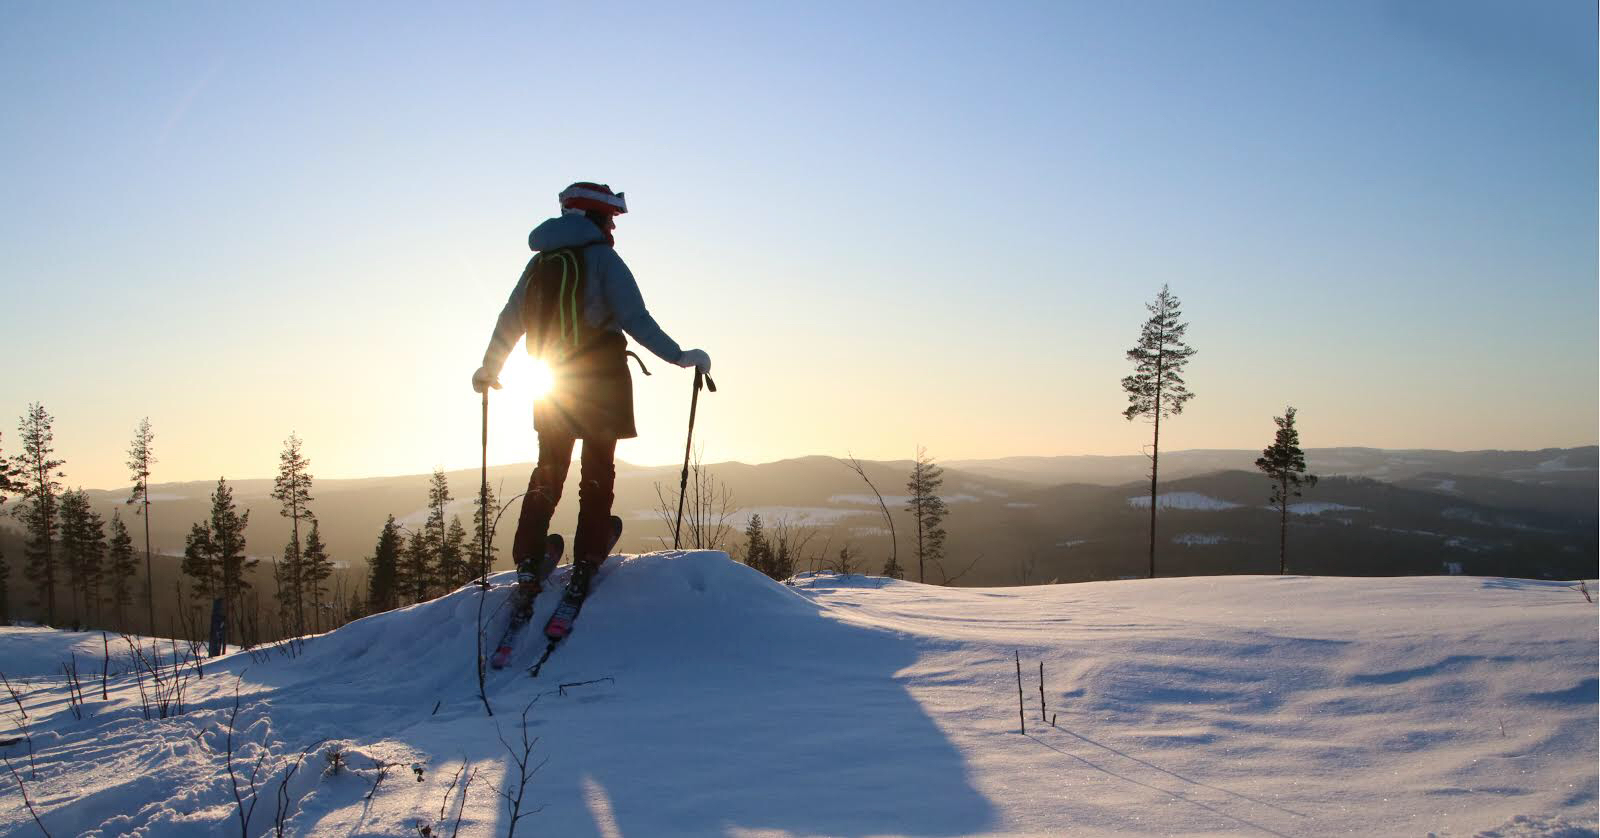 Lotten Rapp ståendes med skidorna på fötterna på ett berg. Solen skiner över det snötäckta landskapet och hon blickar ut över dalen.